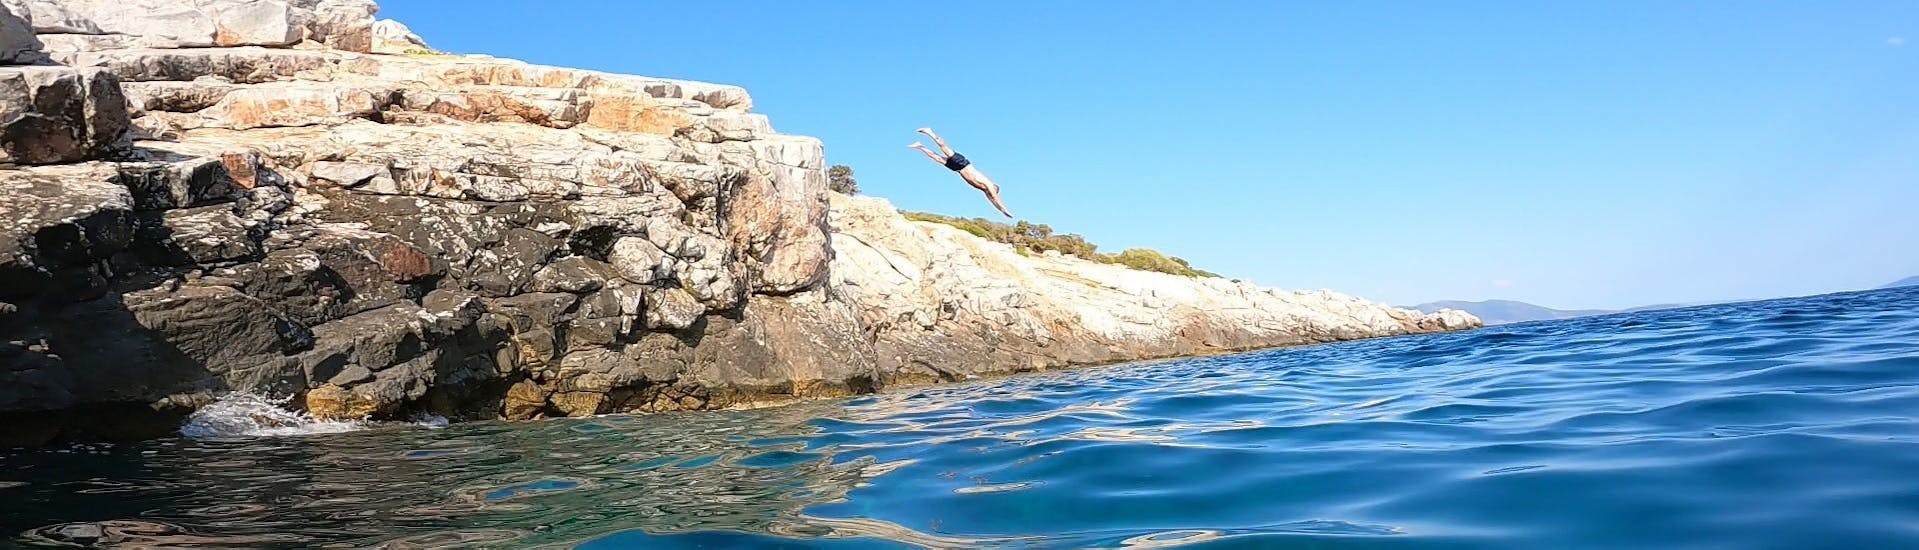 Homme plongeant lors d'une excursion en bateau avec plongée en apnée et saut de falaise près d'Athènes organisée par Kanelakis Diving Experiences - Dimitris Kanelakis.